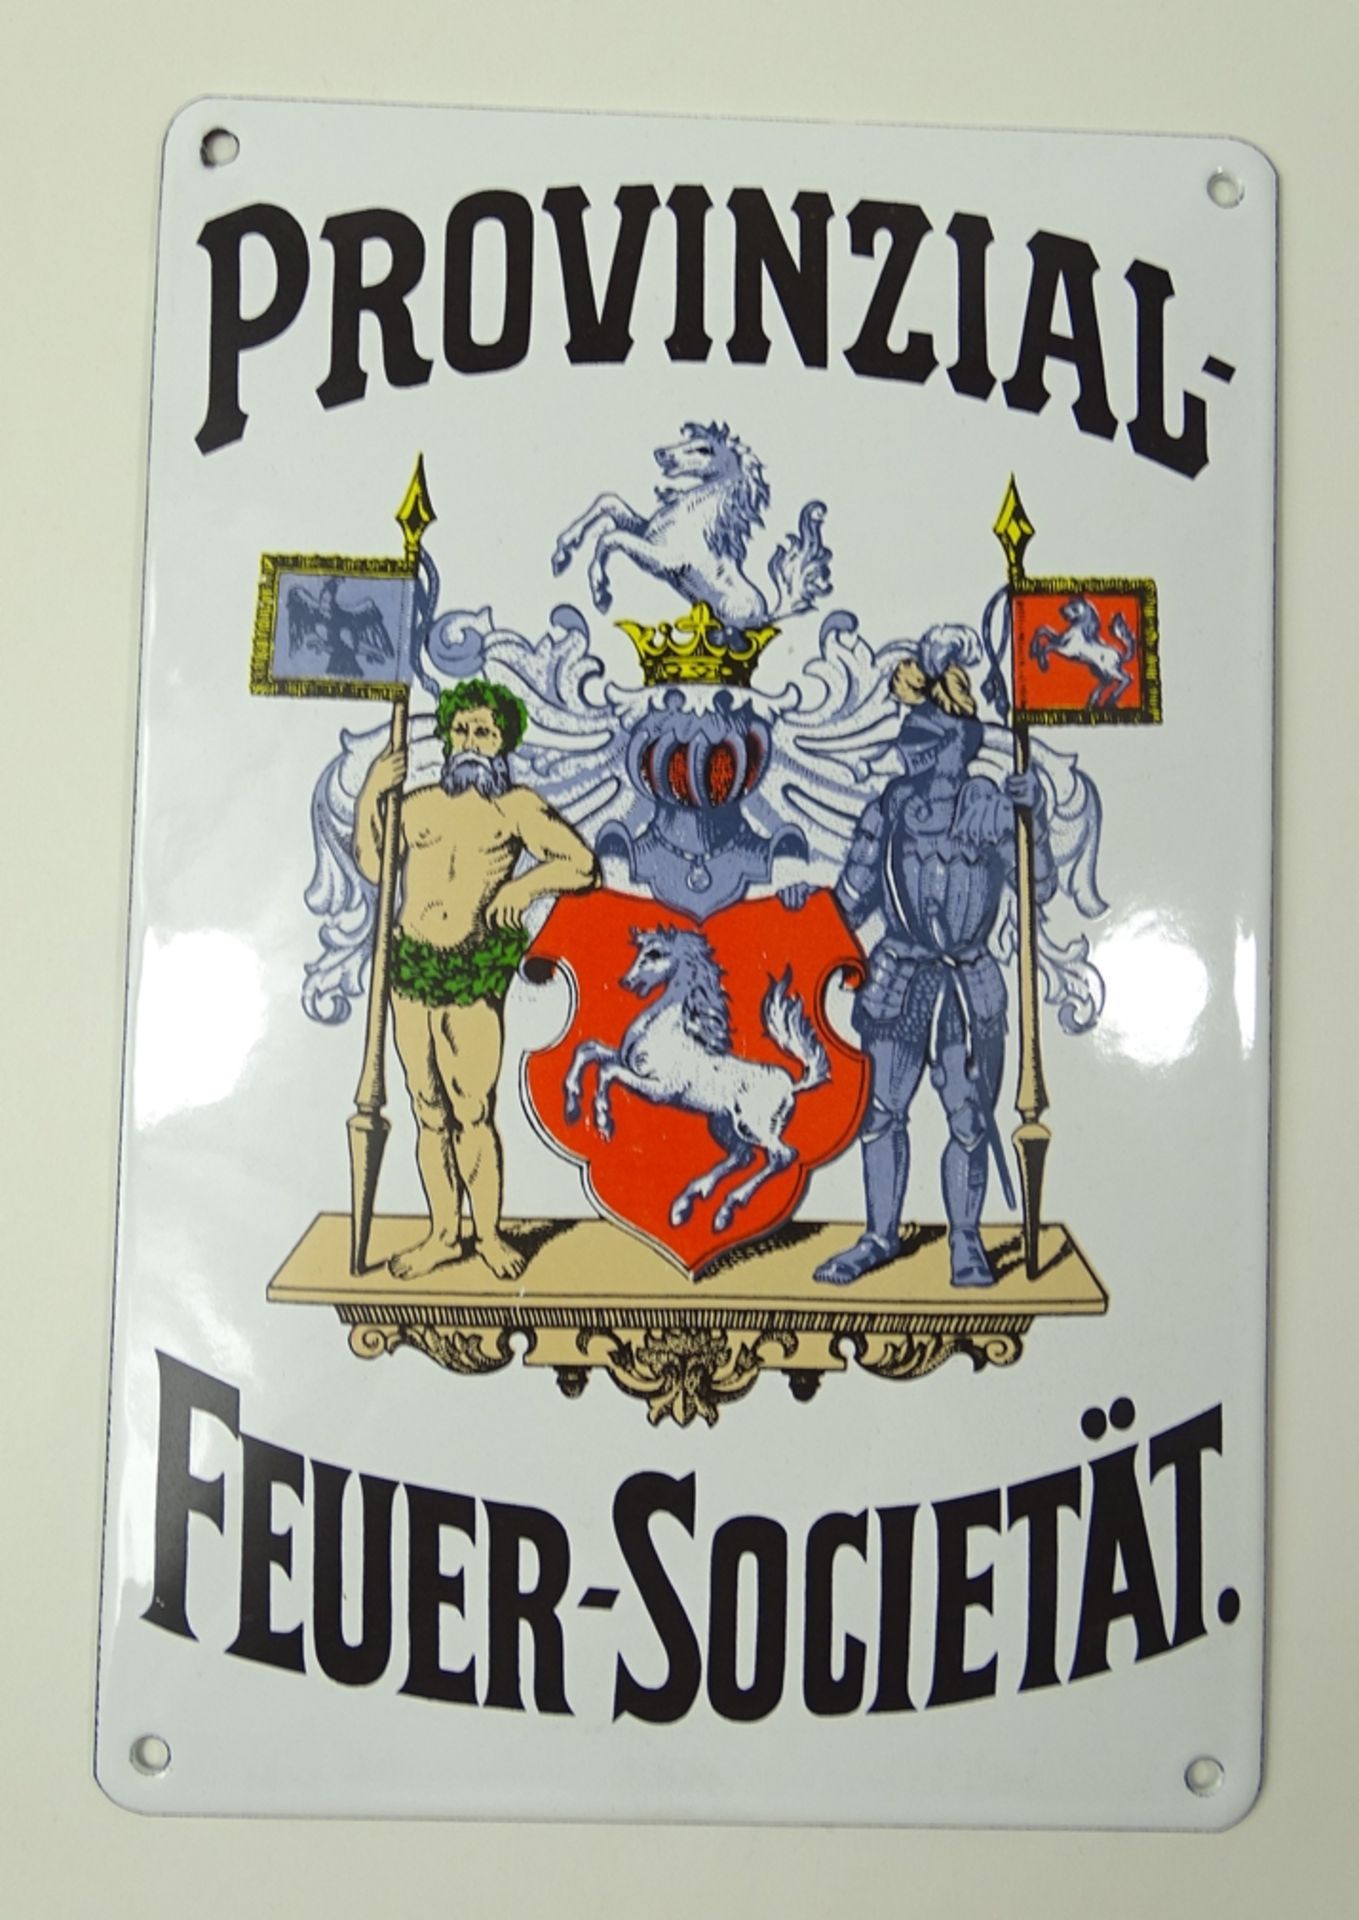 Emailleschild "Provinzial Feuer Societät", 16 x 23,5 cm, leichte Altersspuren